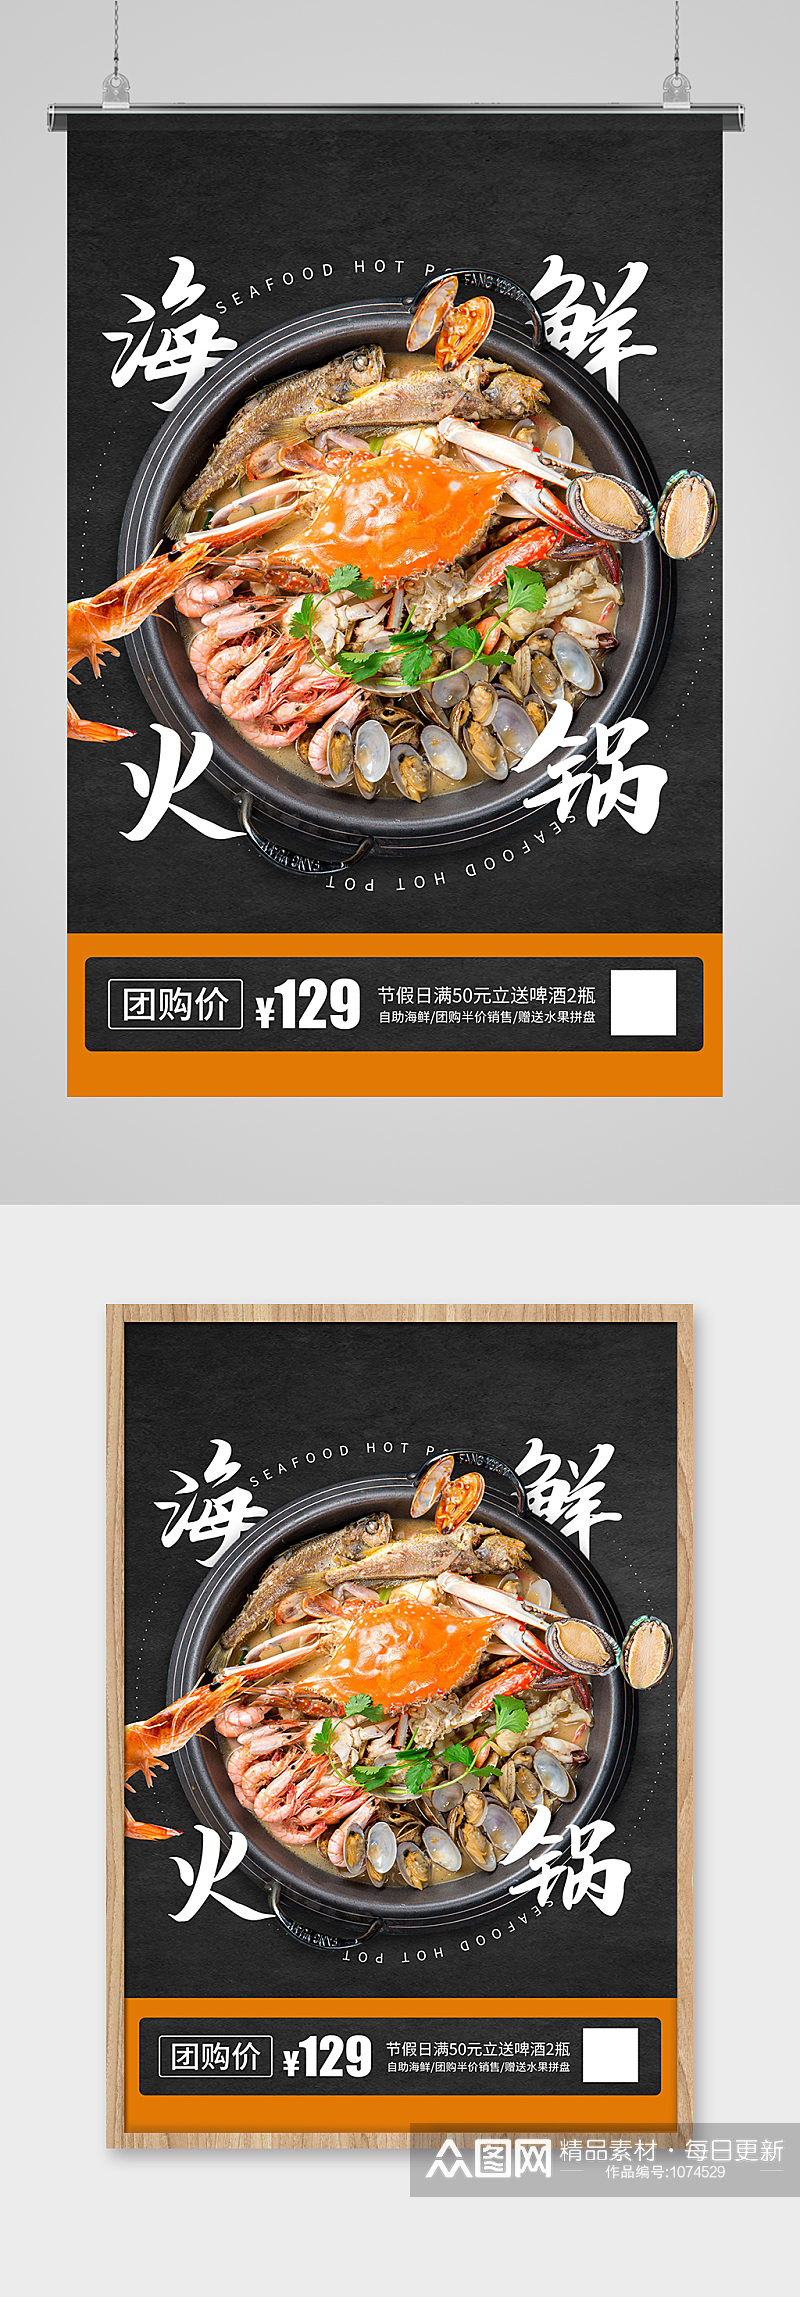 海鲜大咖火锅美食餐饮海报素材